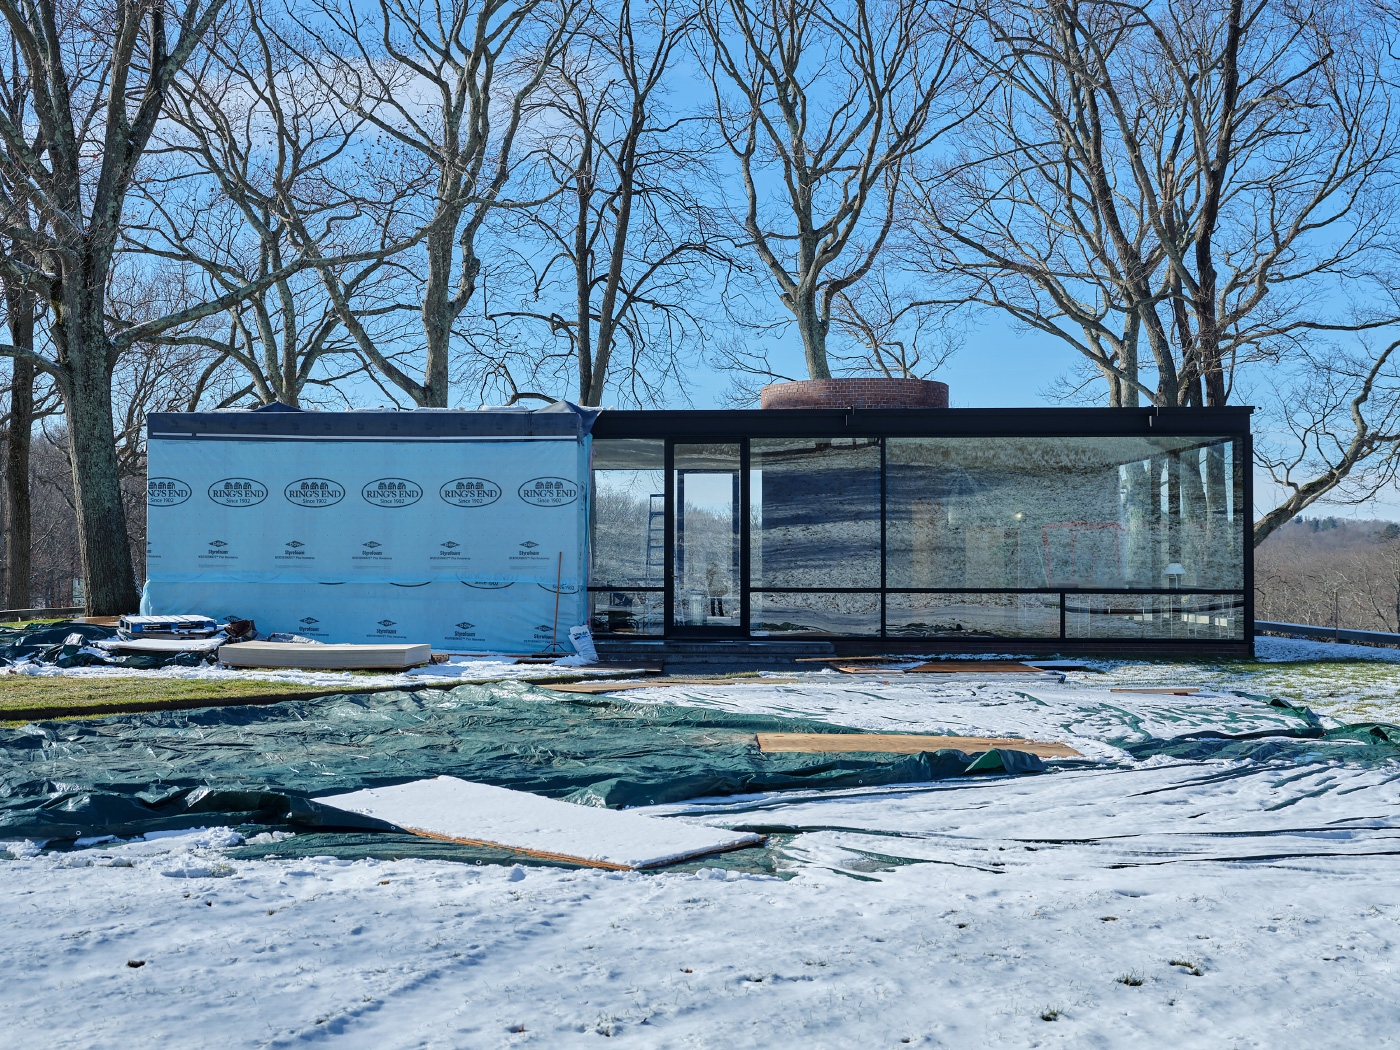 菲利普·约翰逊(Philip Johnson)的玻璃屋(Glass House)的冬季照片，一半被防水布覆盖着